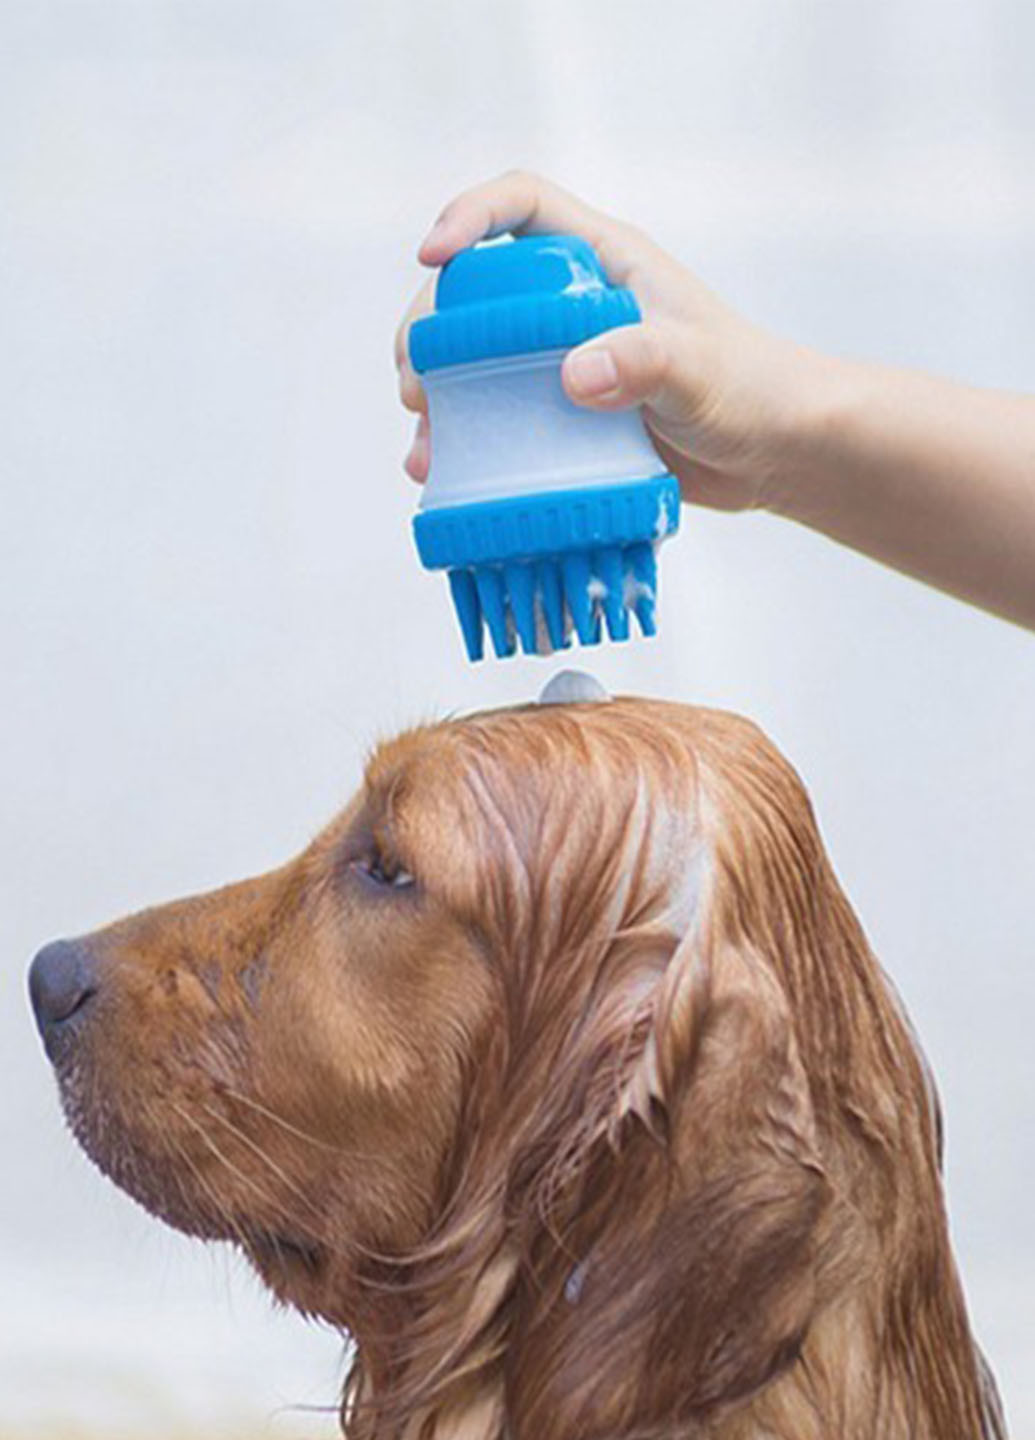 Массажная щетка с дозатором Cleaning Device Gentle Dog Washer для купания и ухода за животными Good Idea (271679549)